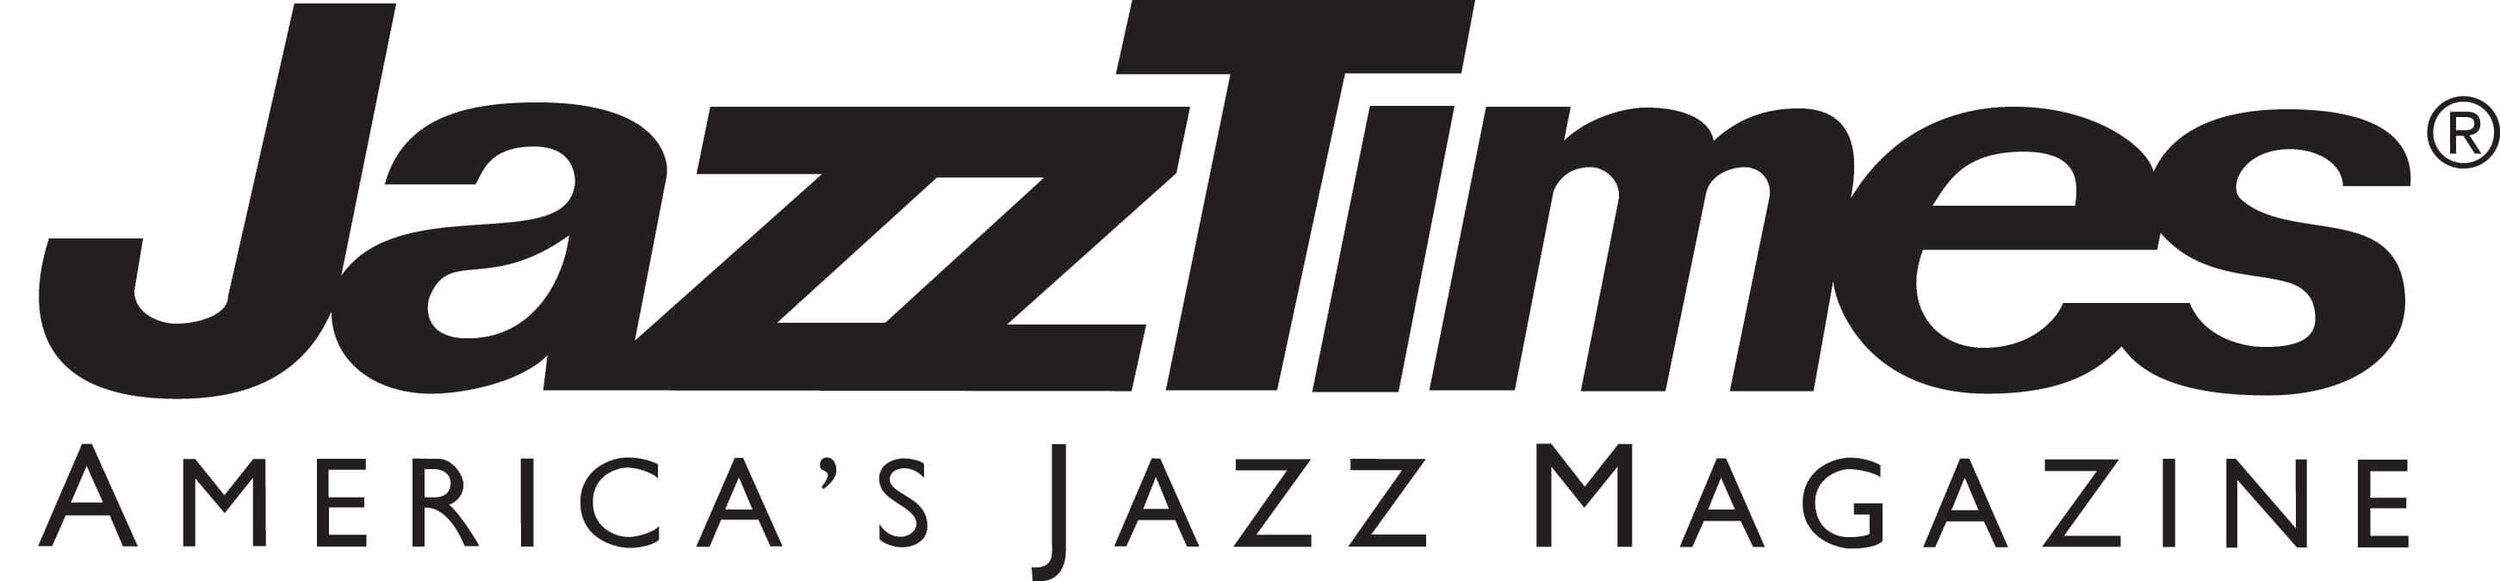 JazzTimes_black1.jpg